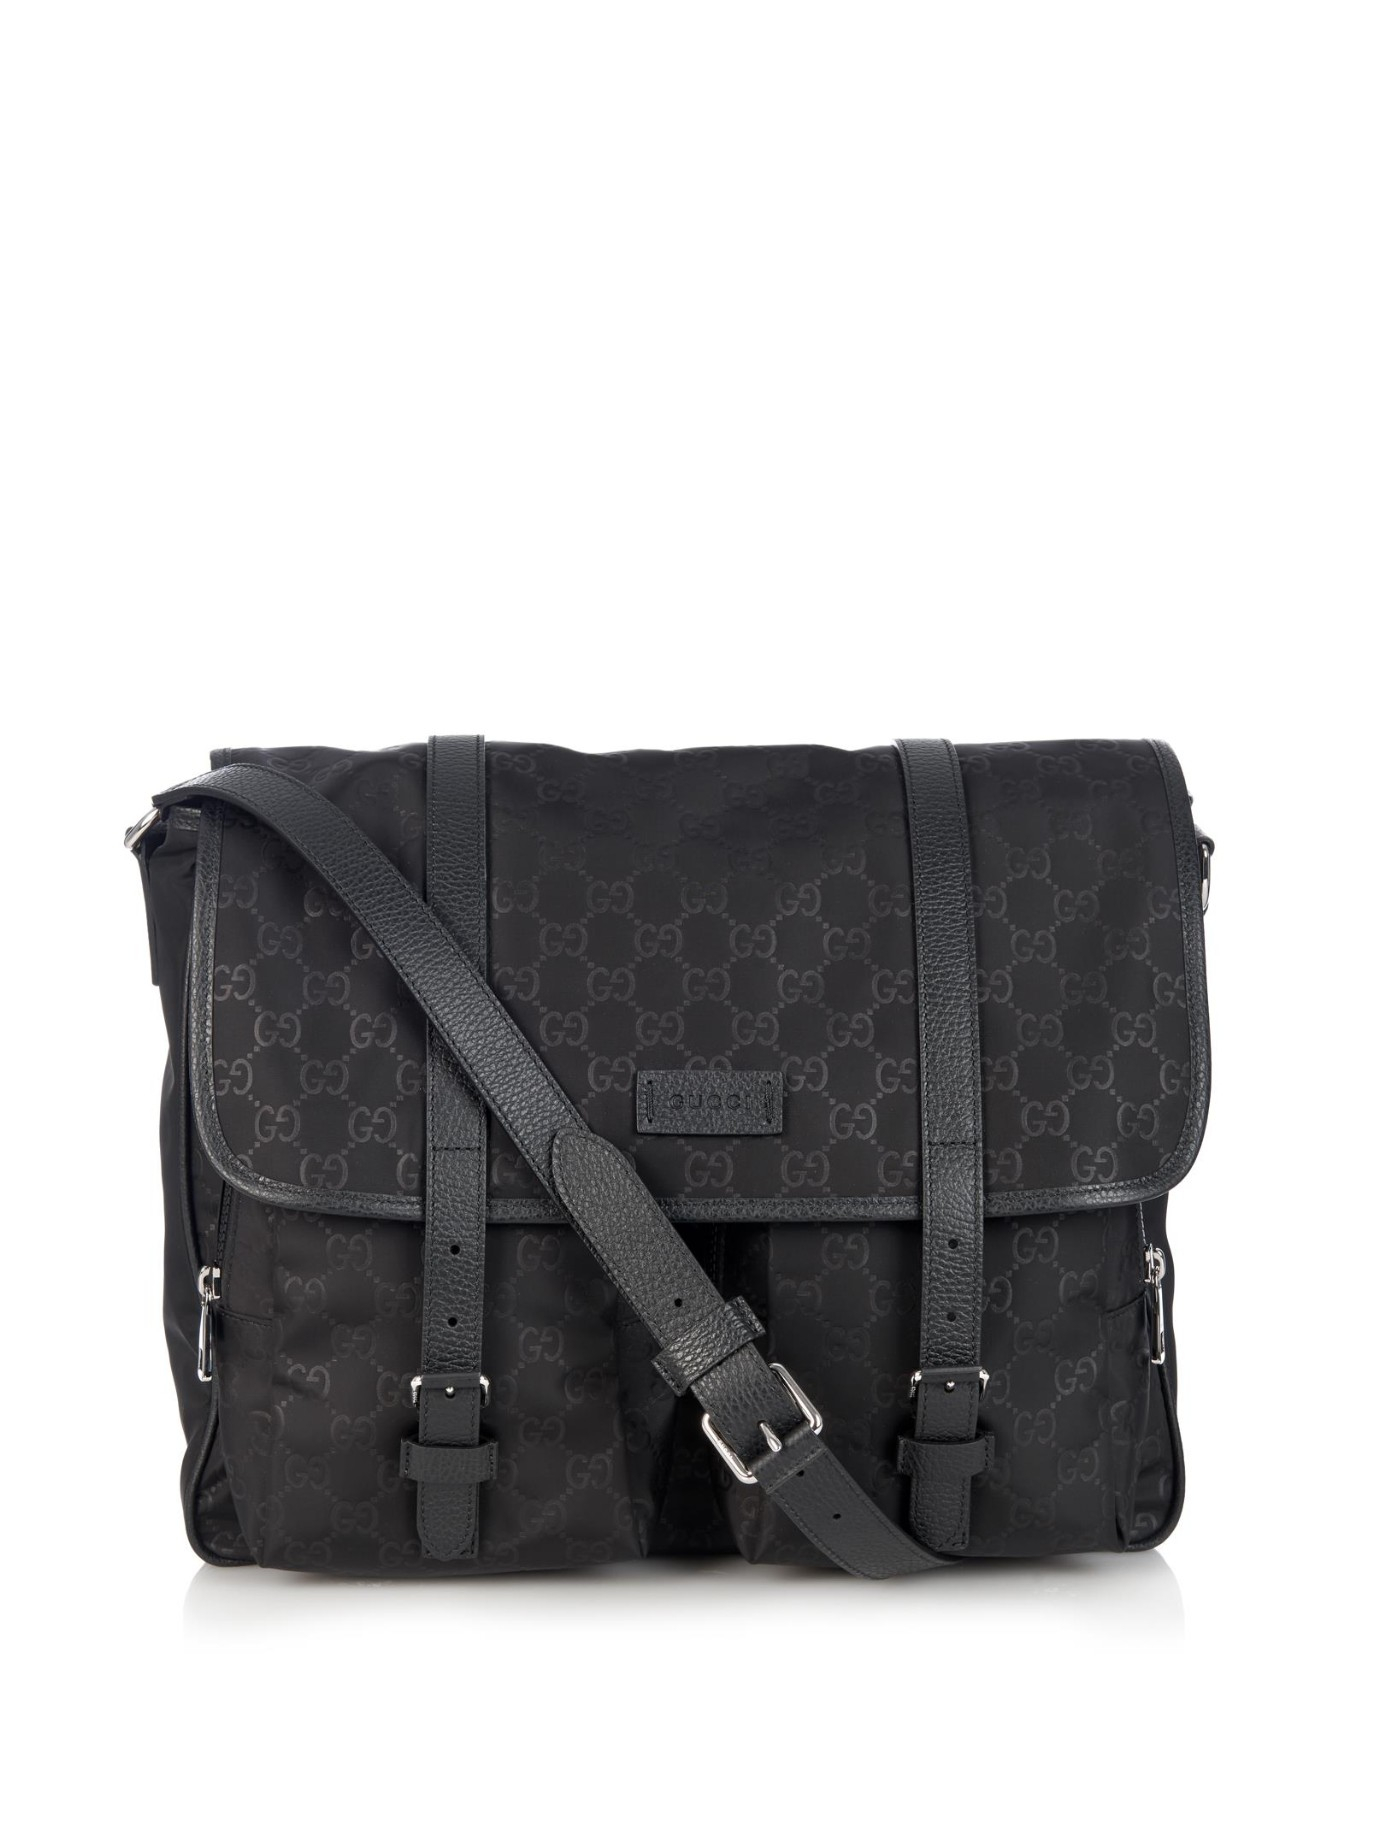 Gucci Monogram Gg Nylon Messenger Bag in Black for Men - Lyst